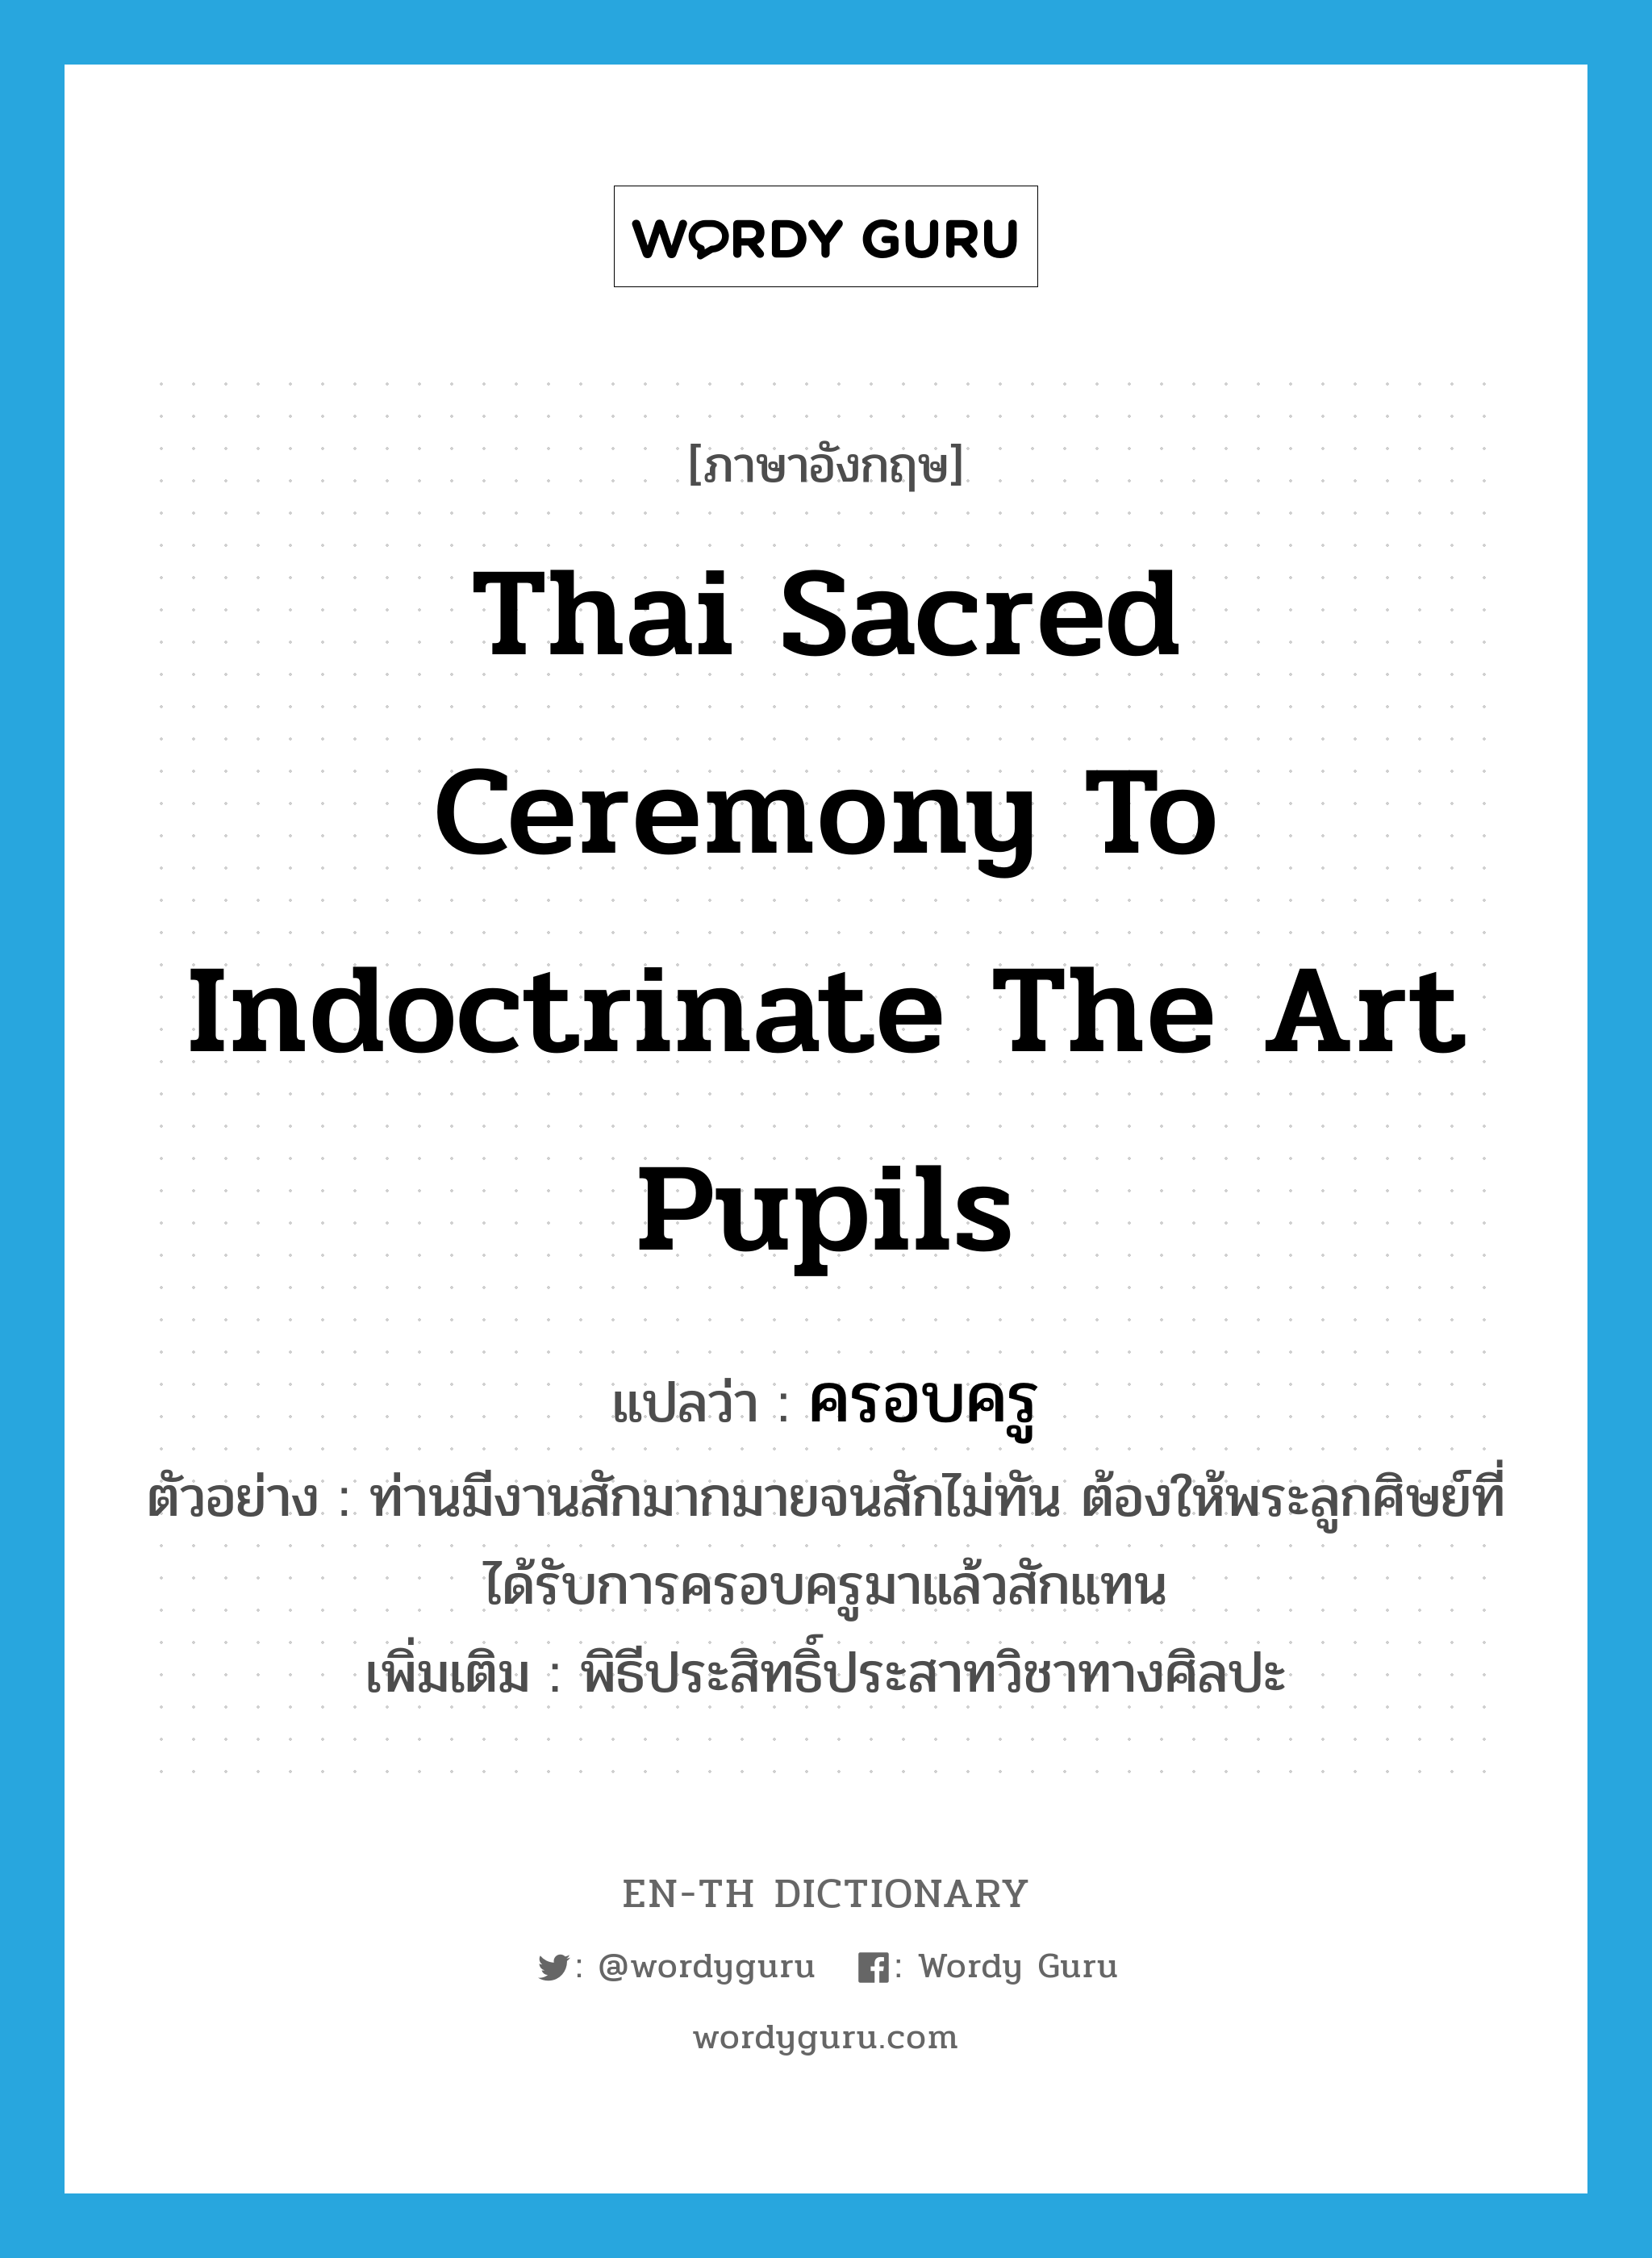 Thai sacred ceremony to indoctrinate the art pupils แปลว่า?, คำศัพท์ภาษาอังกฤษ Thai sacred ceremony to indoctrinate the art pupils แปลว่า ครอบครู ประเภท N ตัวอย่าง ท่านมีงานสักมากมายจนสักไม่ทัน ต้องให้พระลูกศิษย์ที่ได้รับการครอบครูมาแล้วสักแทน เพิ่มเติม พิธีประสิทธิ์ประสาทวิชาทางศิลปะ หมวด N